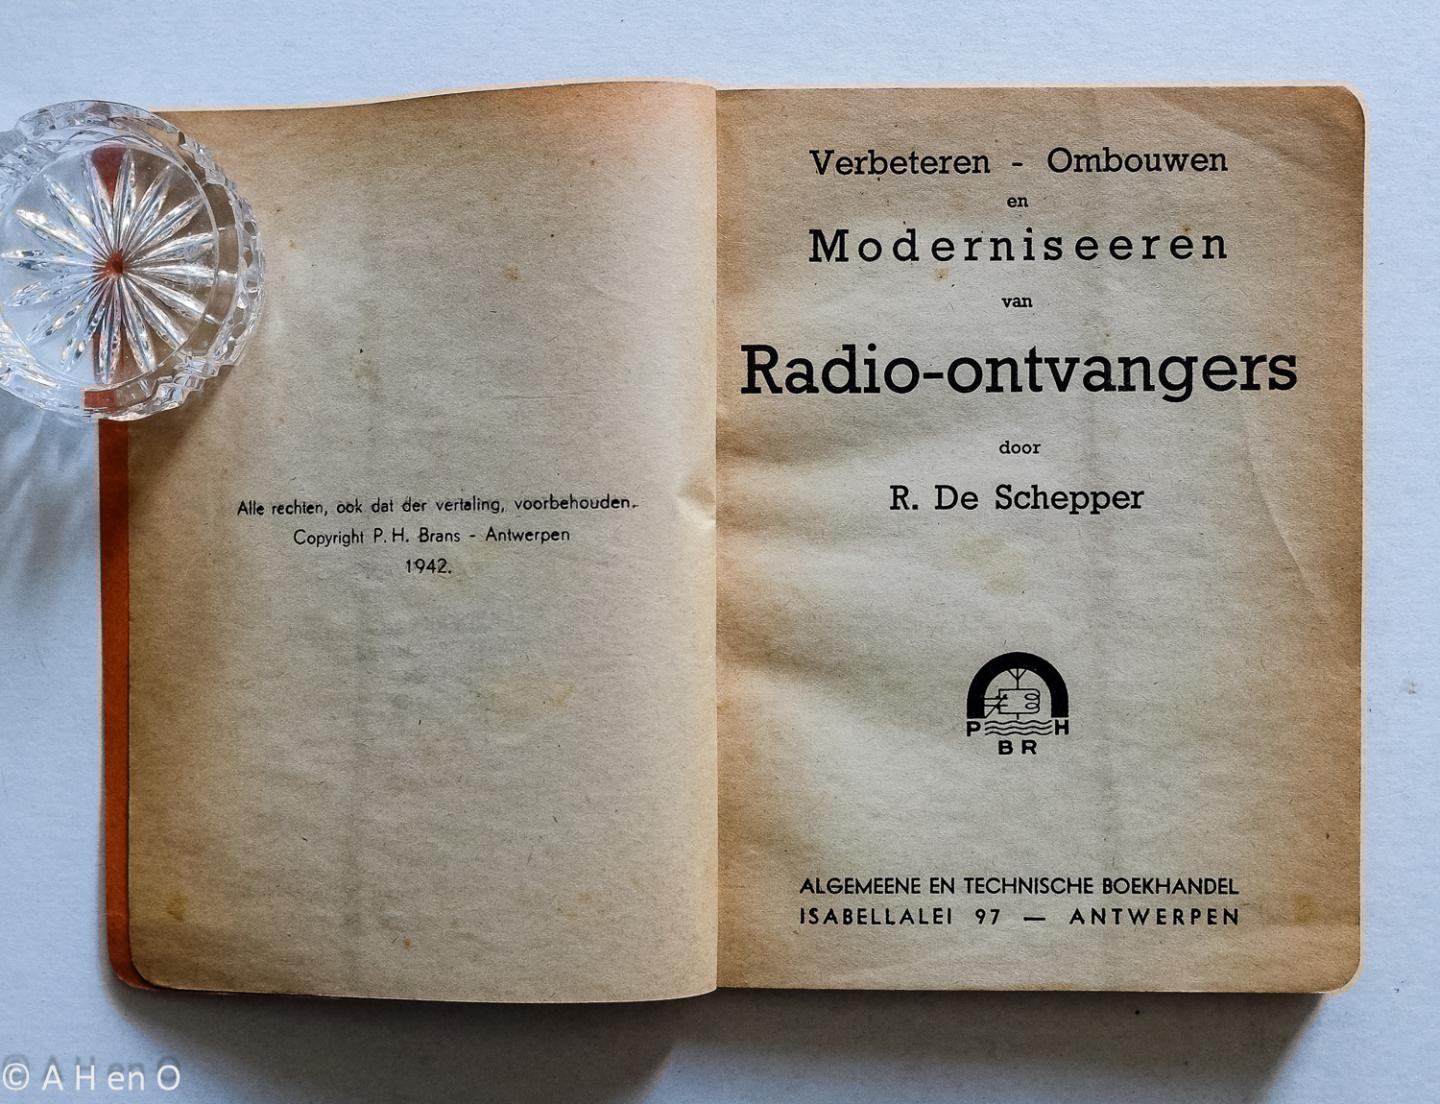 De Schepper, R. - Verbeteren - ombouwen en moderniseeren van radio-ontvangers